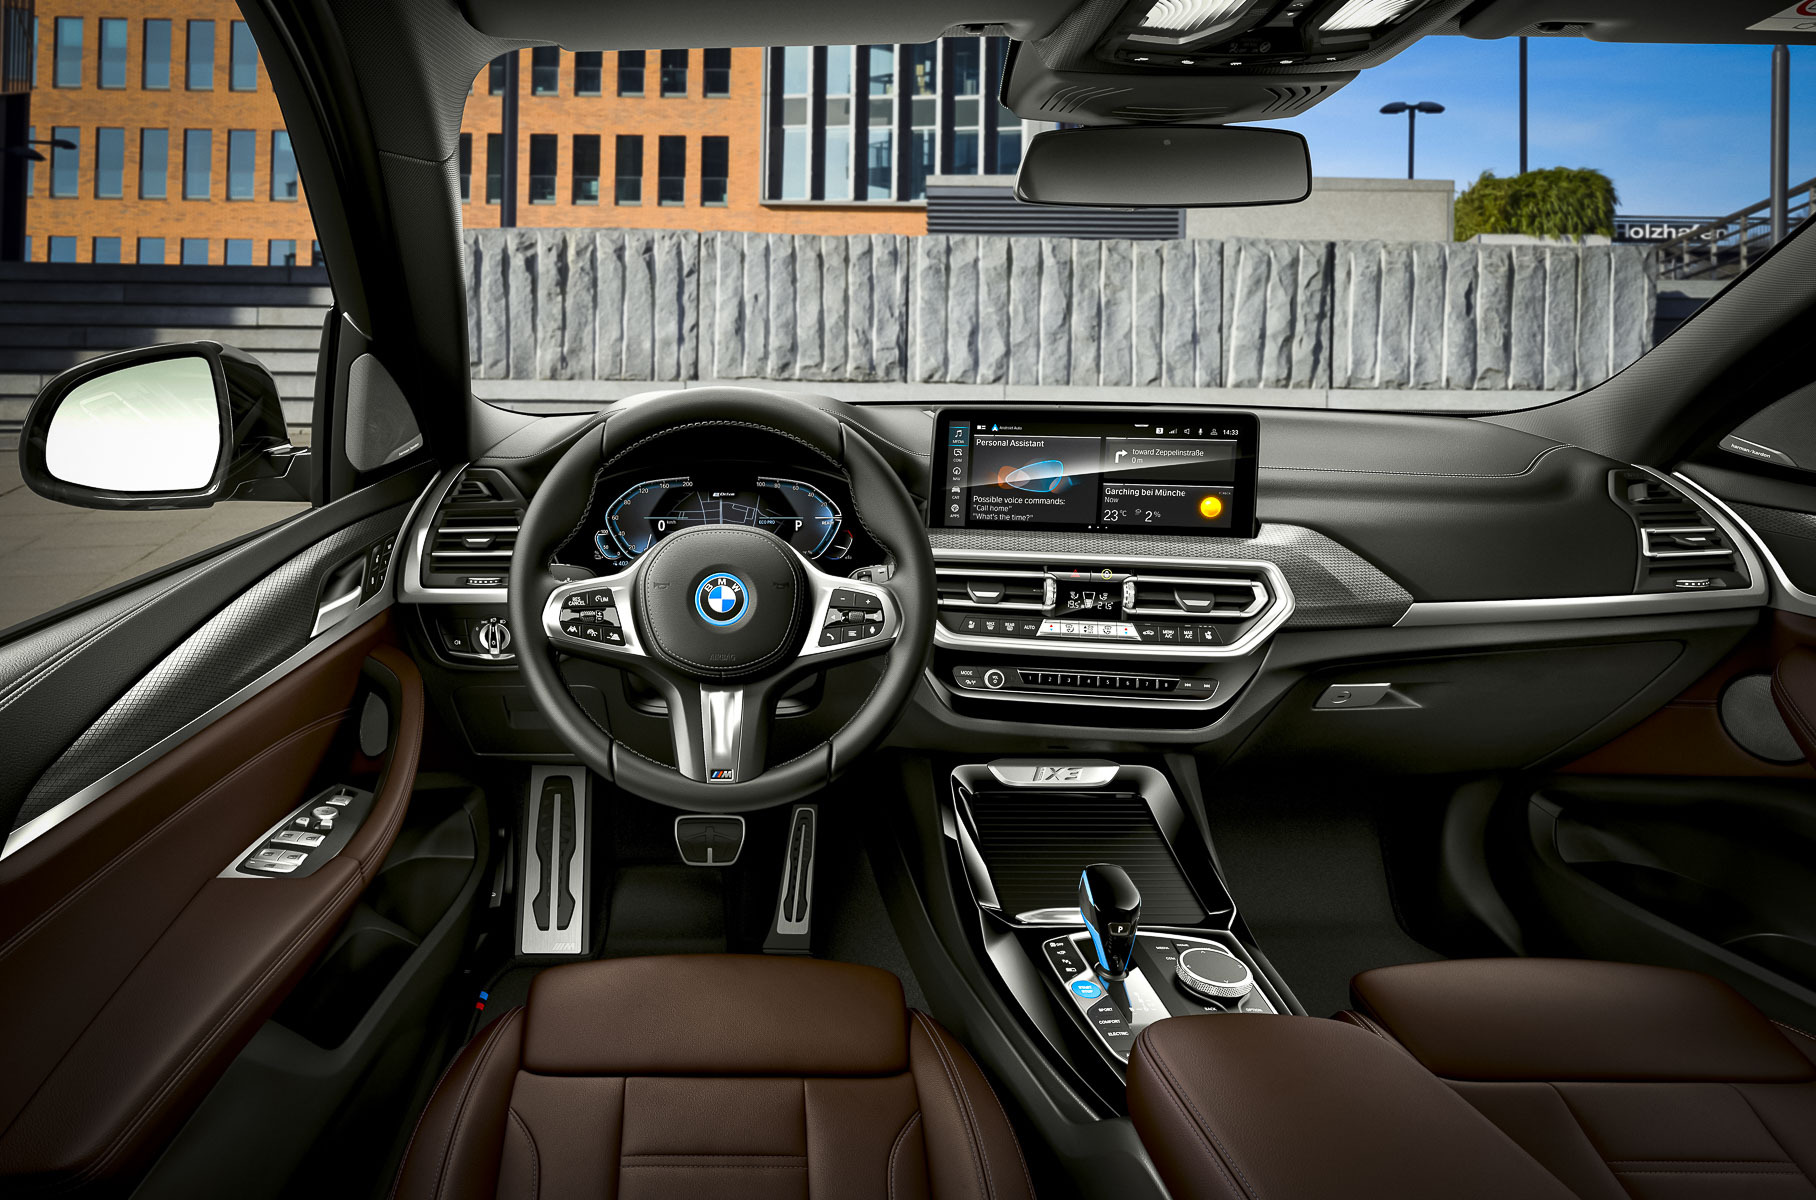 Электрический BMW iX3 получил первое обновление